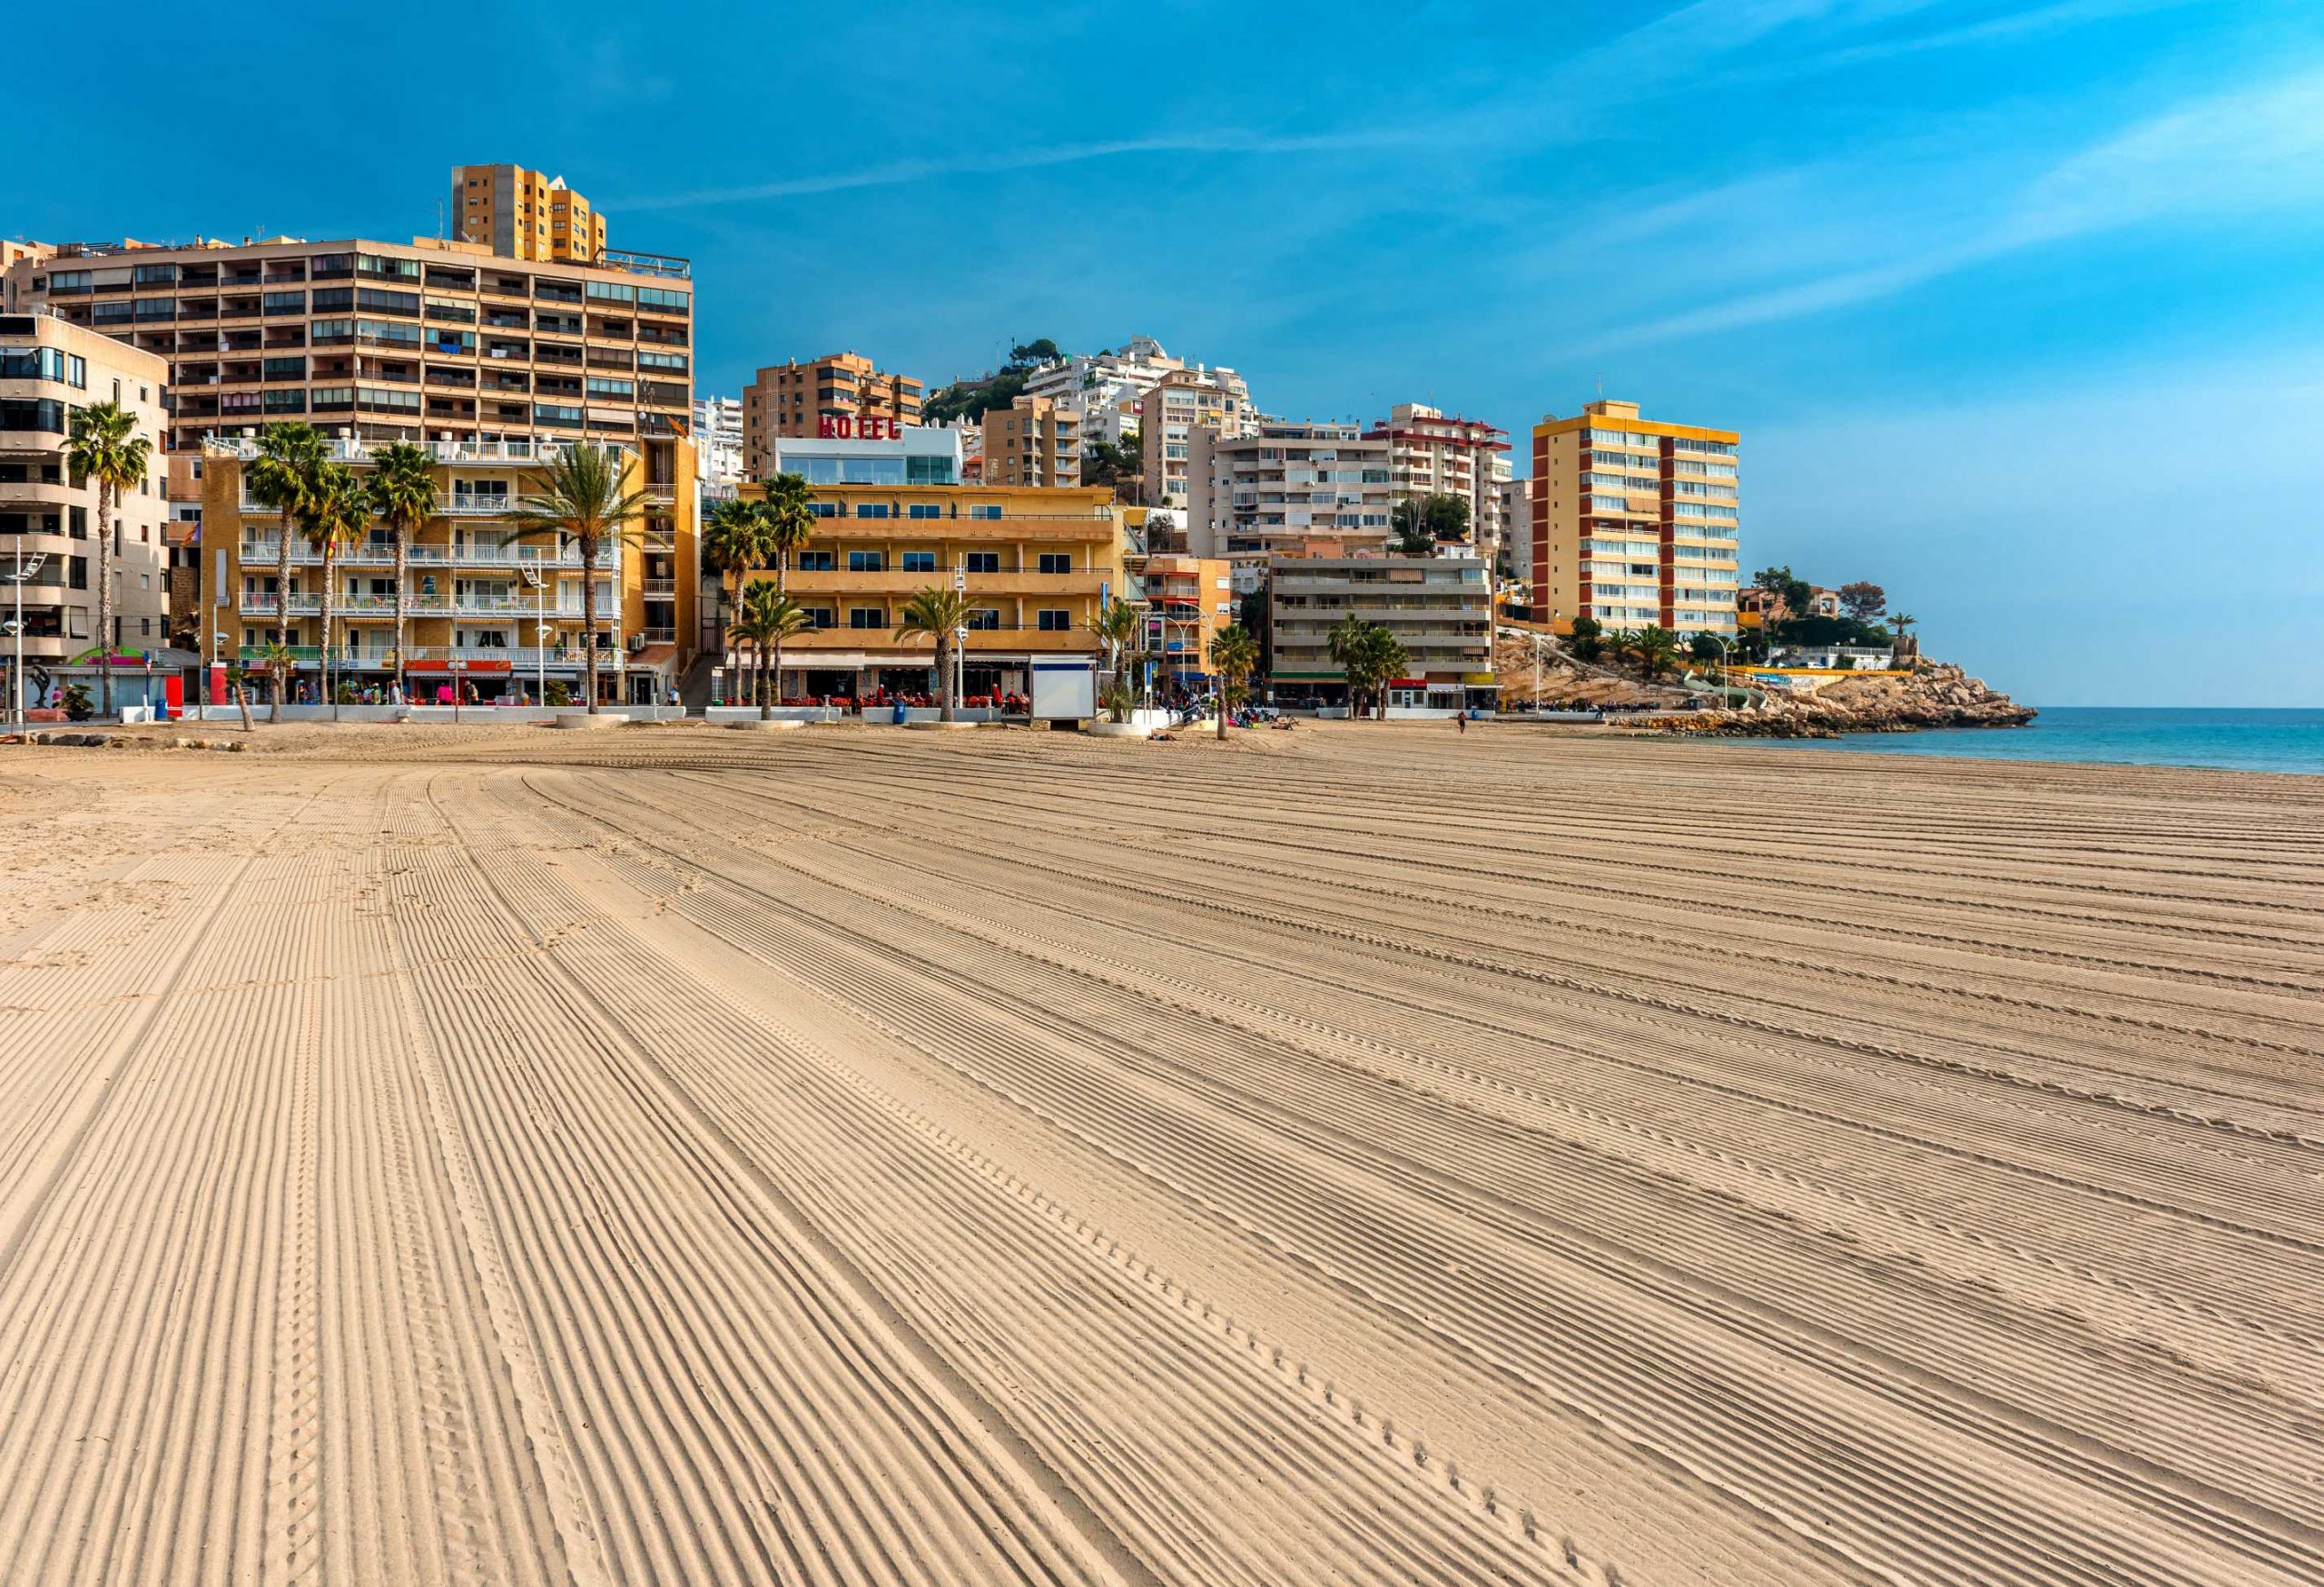 Ga Jij Al Naar Alicante Op Vakantie?